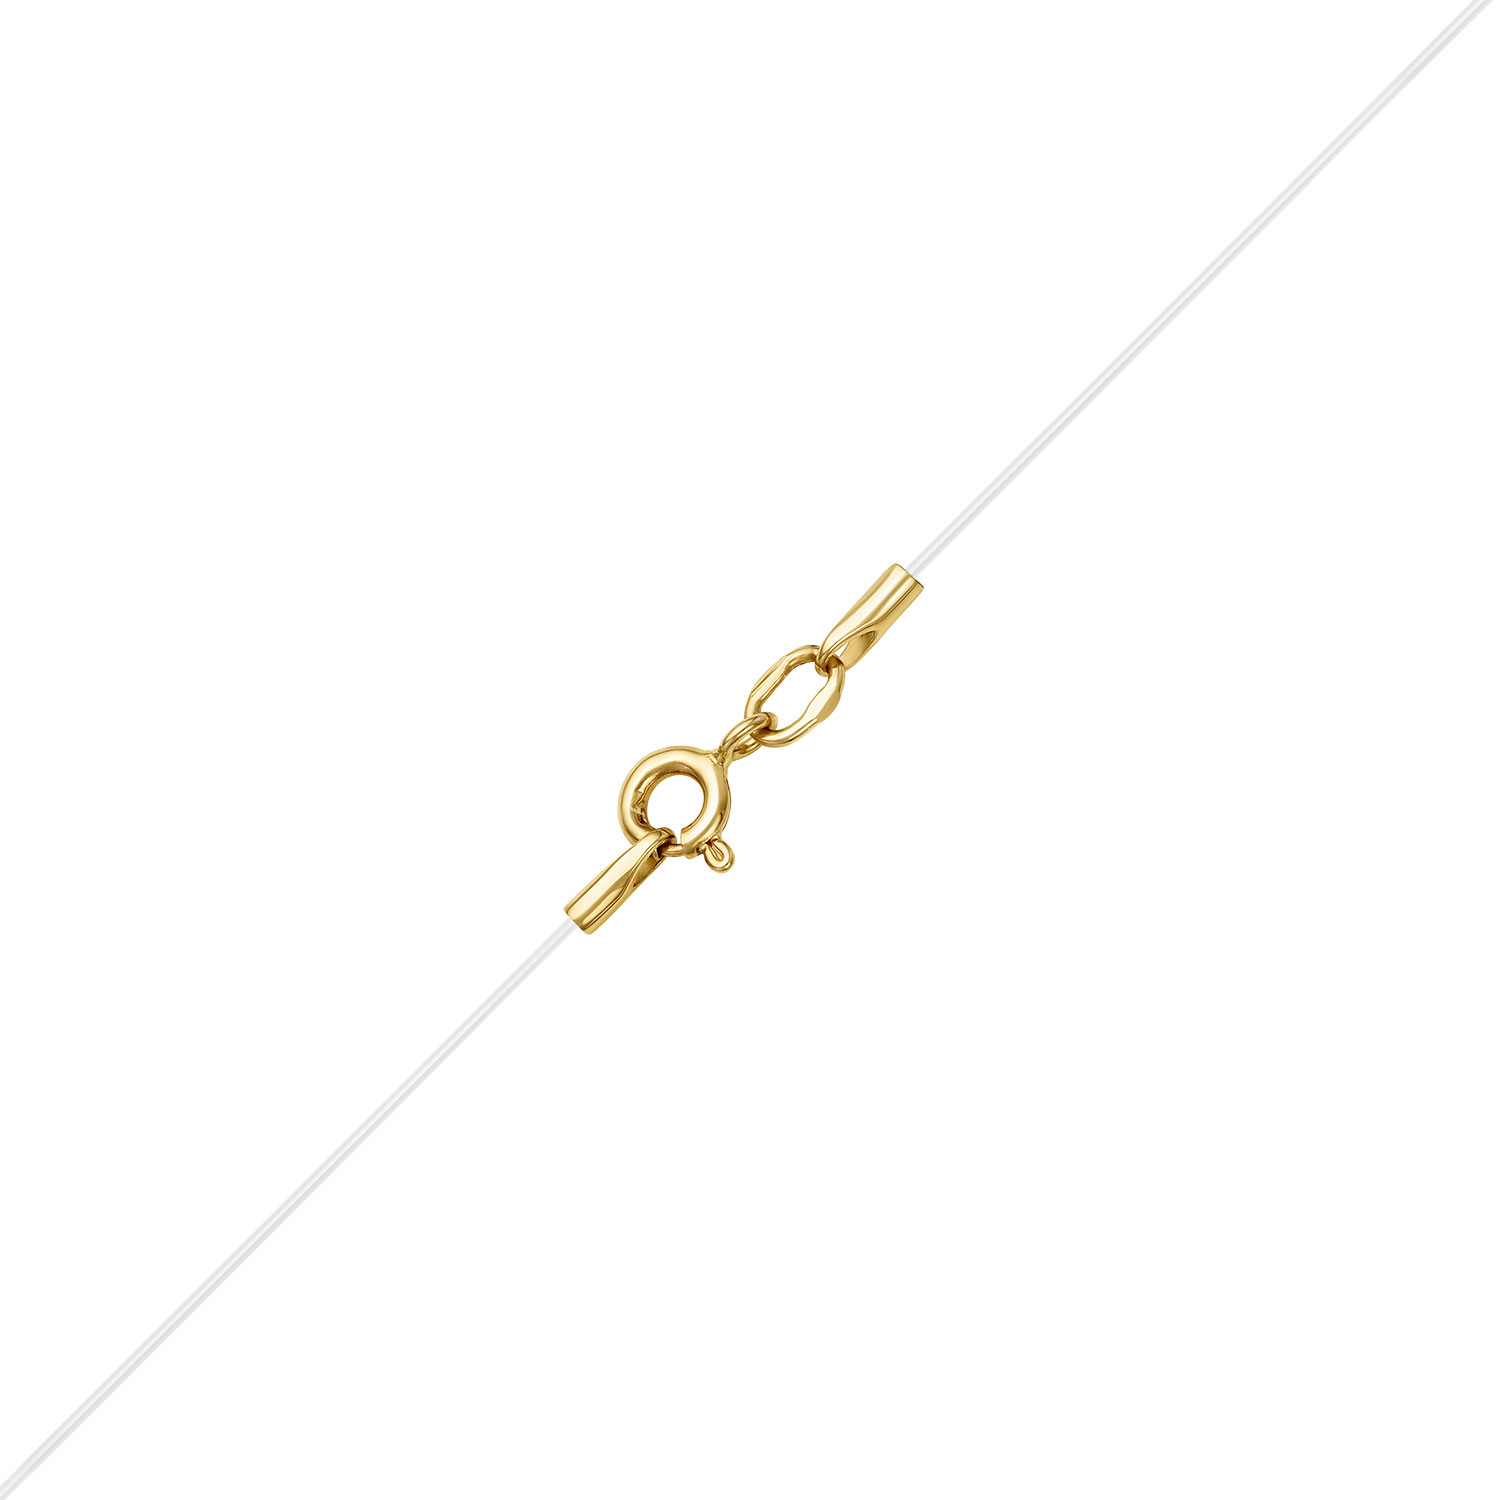 Леска на шею с золотой подвеской Vesna jewelry6473-350-00-02 с бриллиантом— купить в AllTime.ru — фото